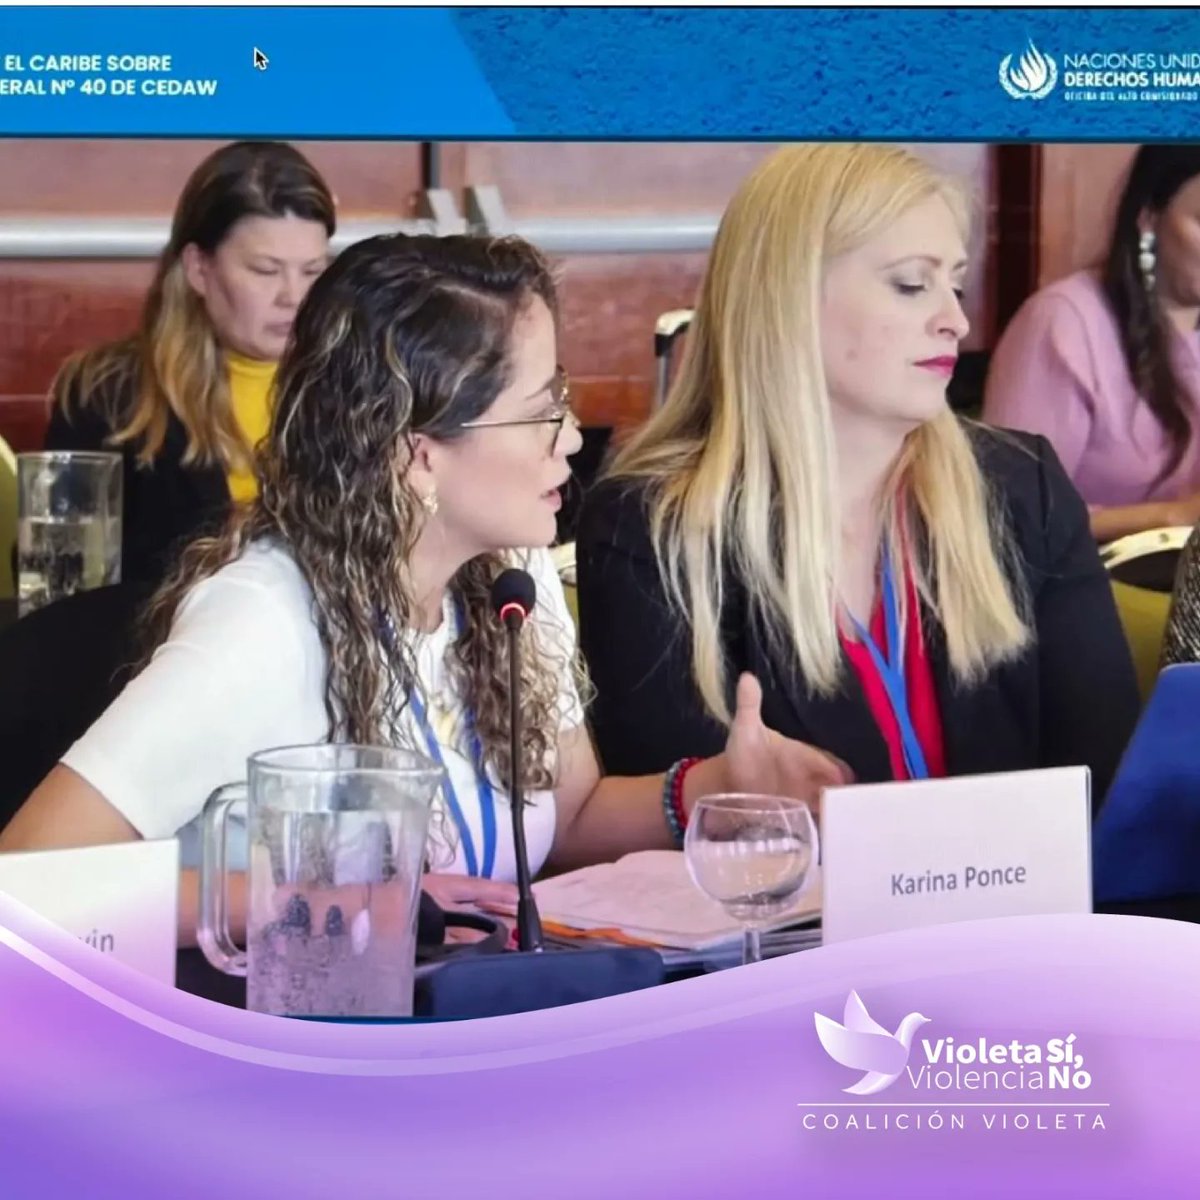 #CEDAWGR40 |La Coalición Violeta, participó activamente en la Consulta Regional para América Latina y el Caribe para la elaboración de la Recomendación General Nro. 40 de CEDAW sobre la representación igualitaria e inclusiva de las mujeres en los sistemas de toma de decisiones.